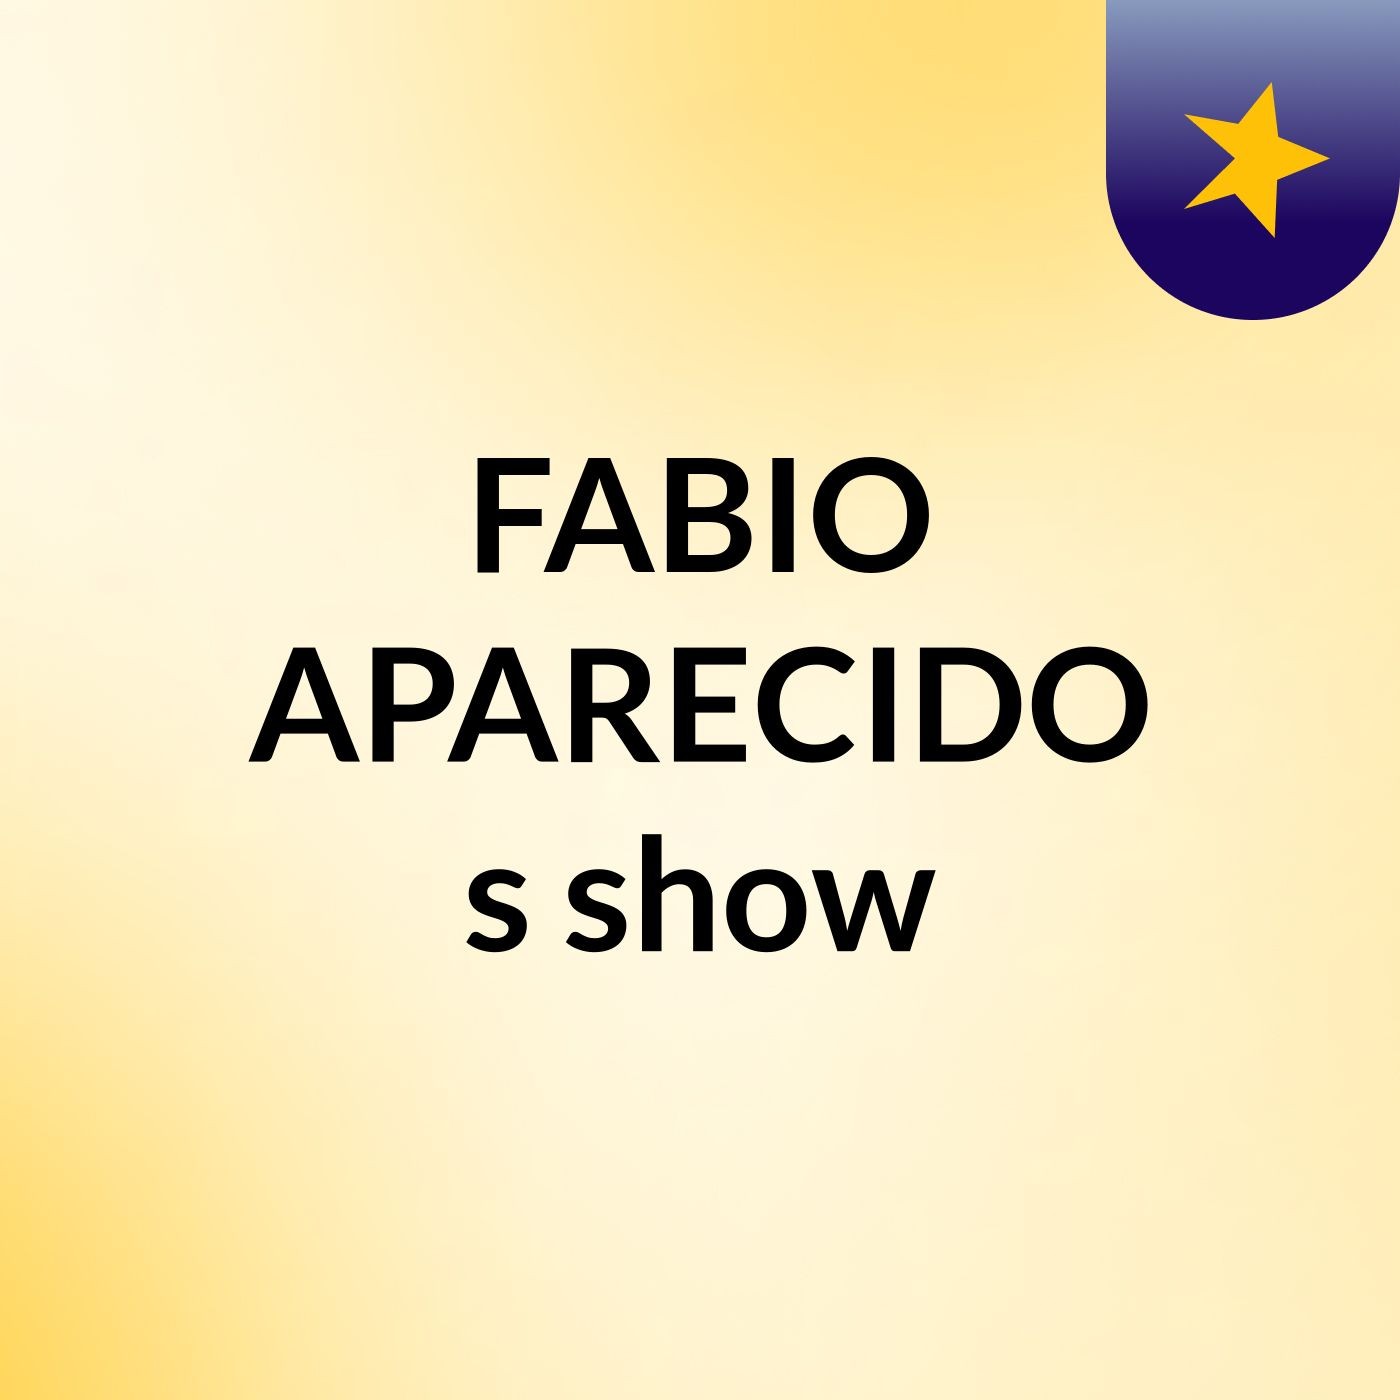 FABIO APARECIDO's show